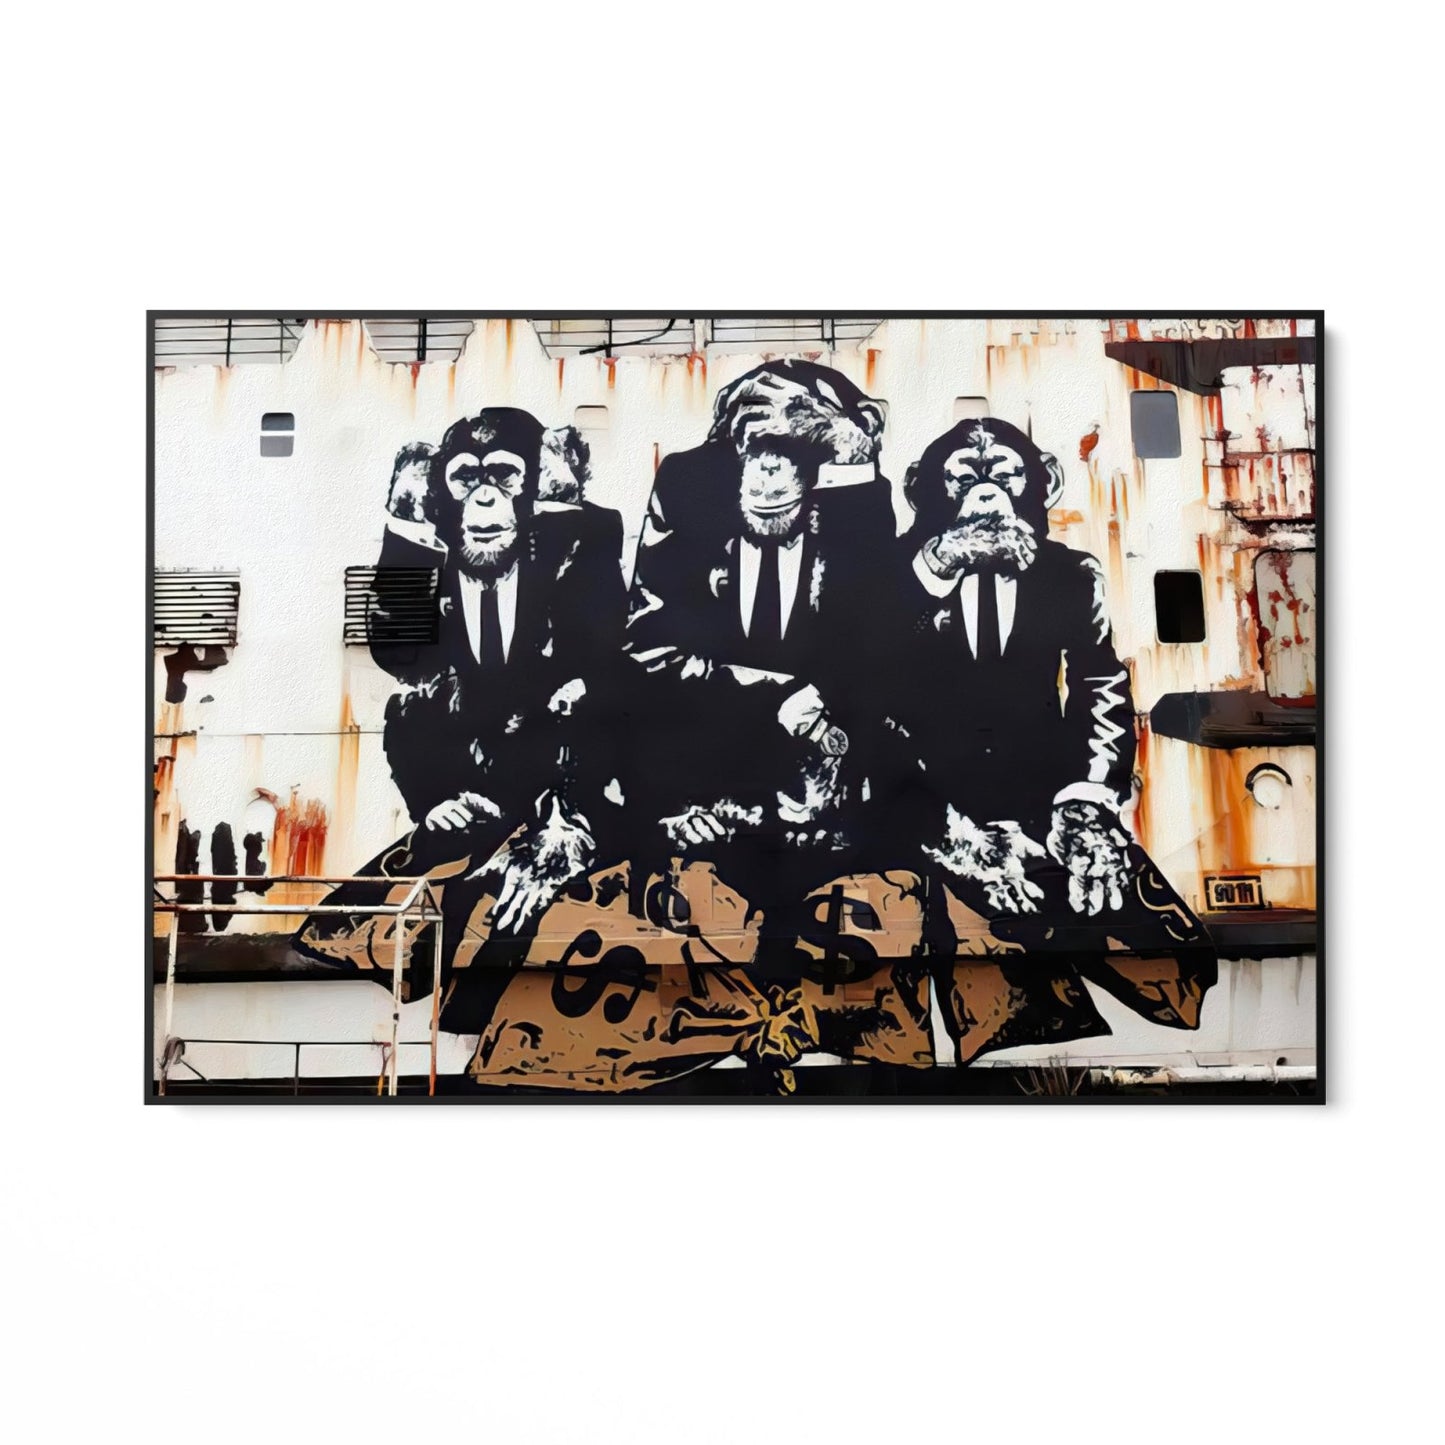 Tri obchodné opice, Banksy